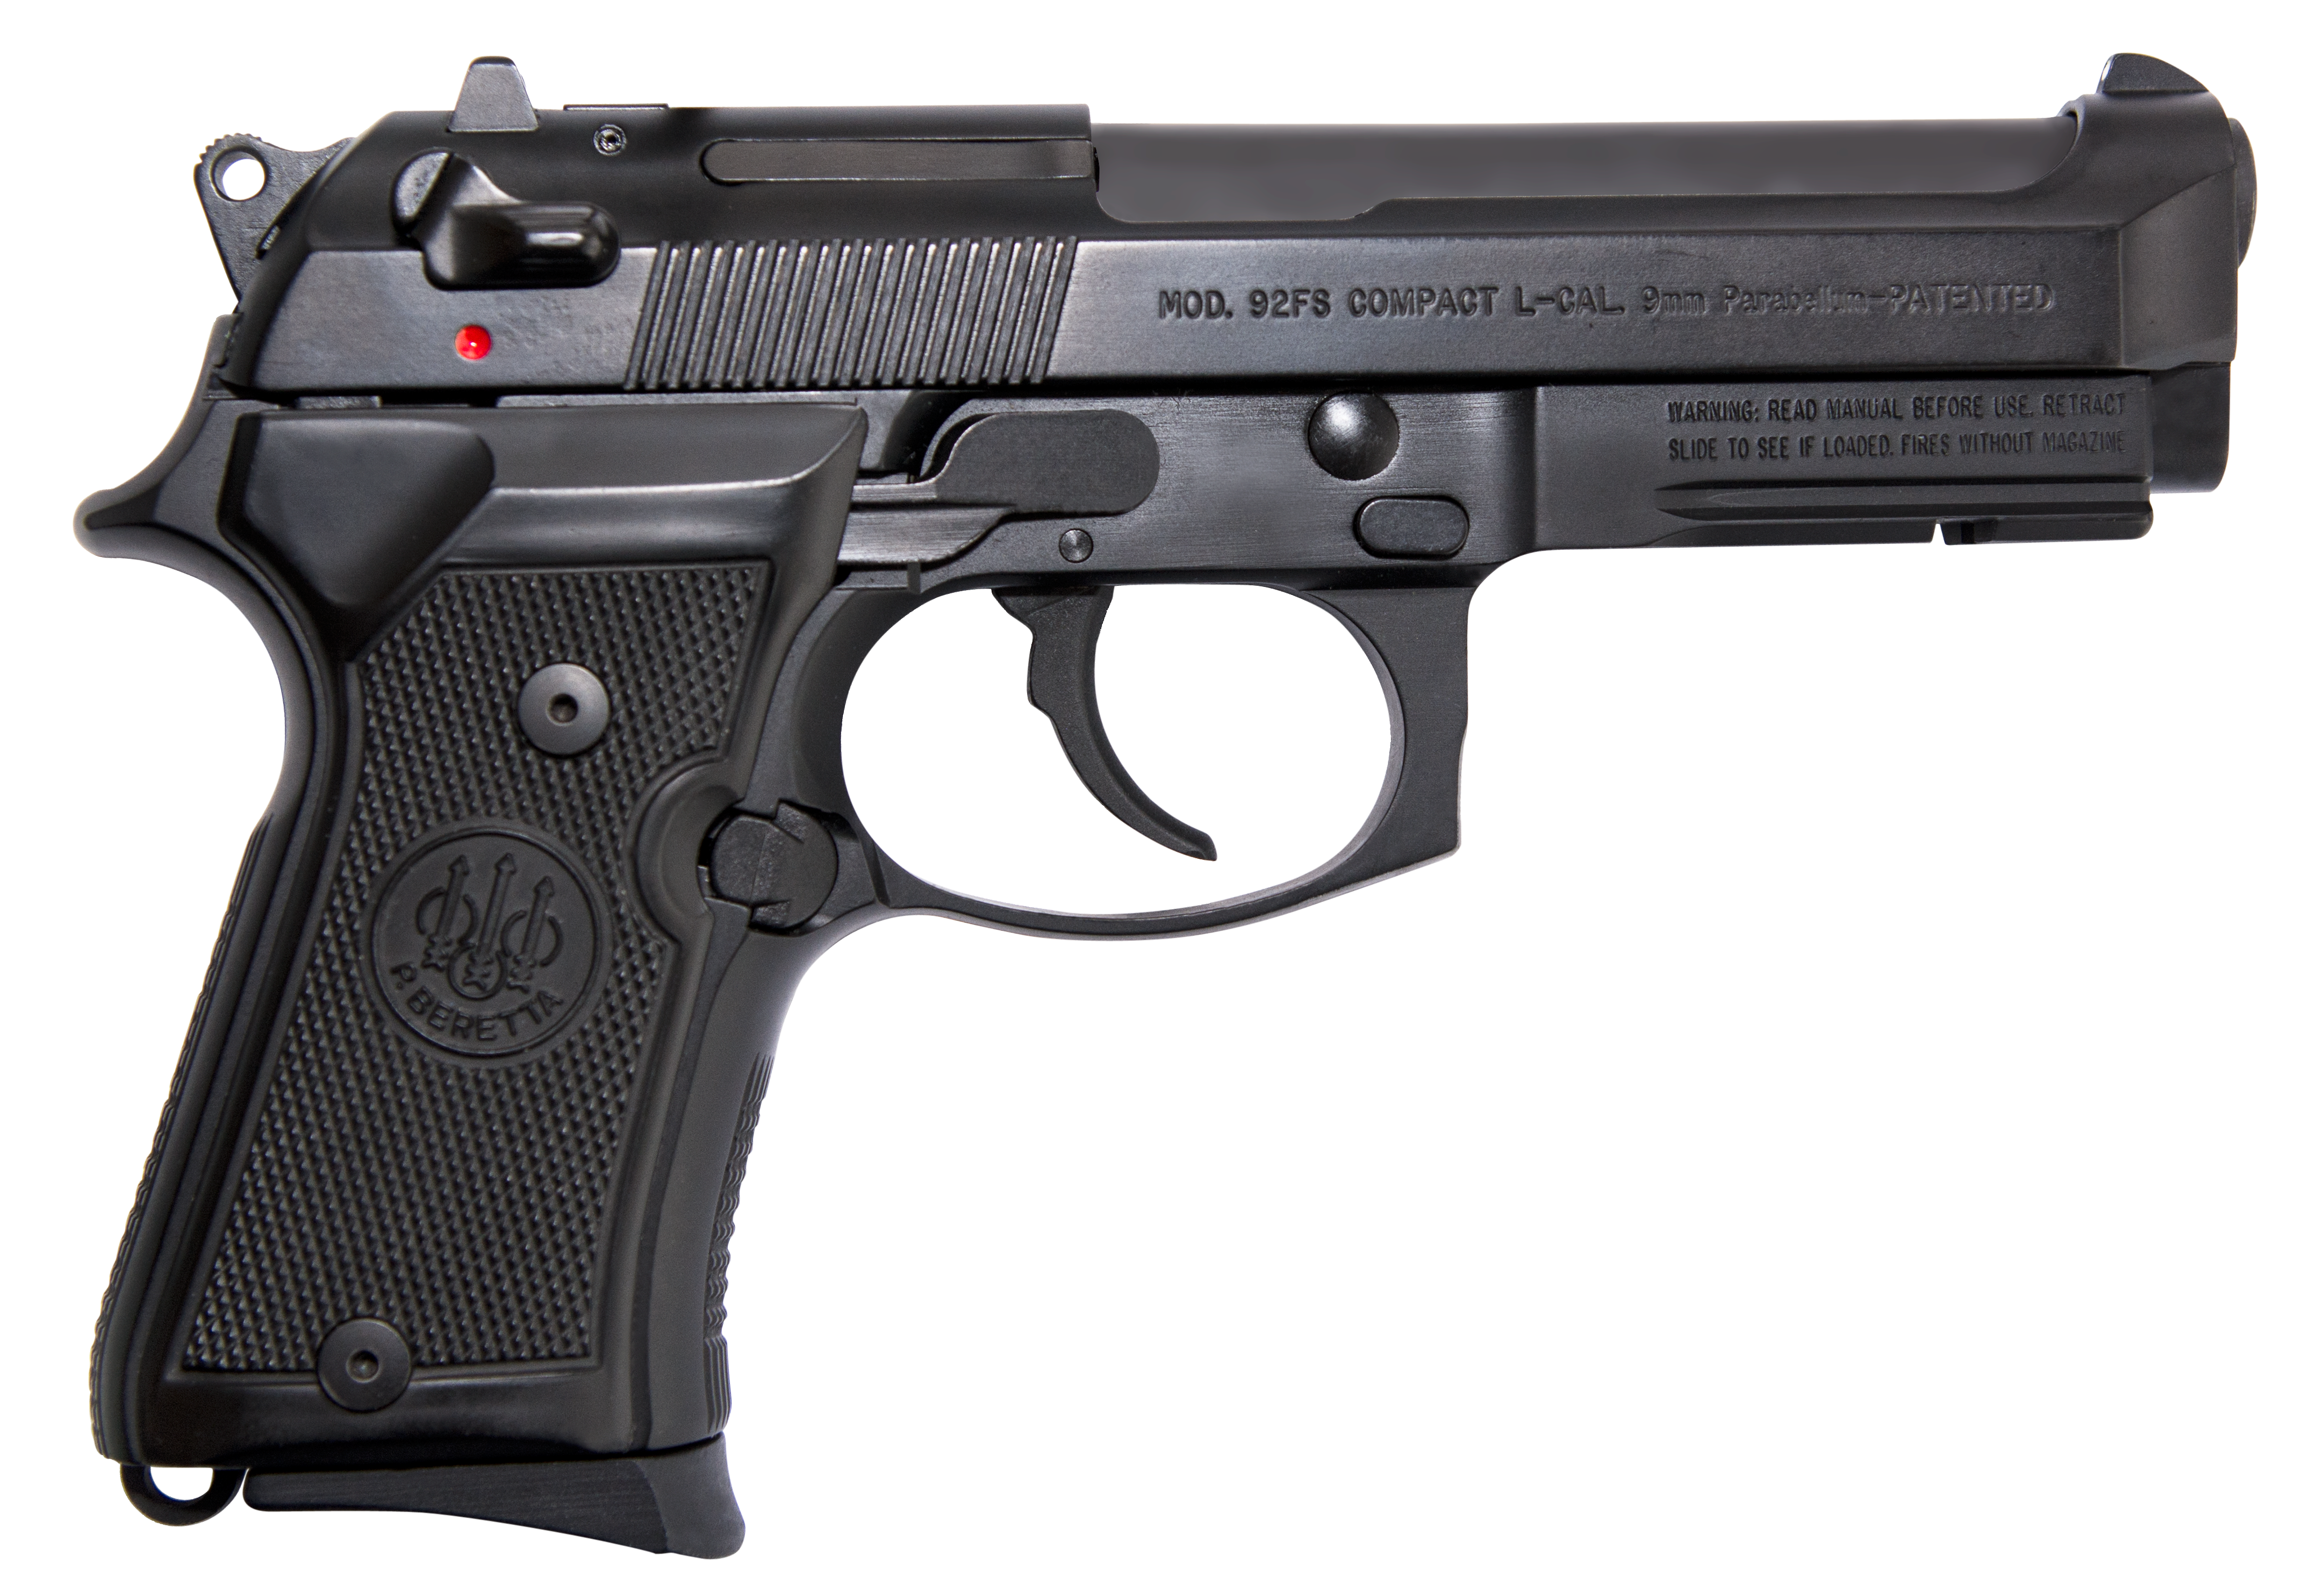  Beretta 92FS Compact W Rail SA DA 9mm 4 25 13RD Syn Grip Black Bruniton